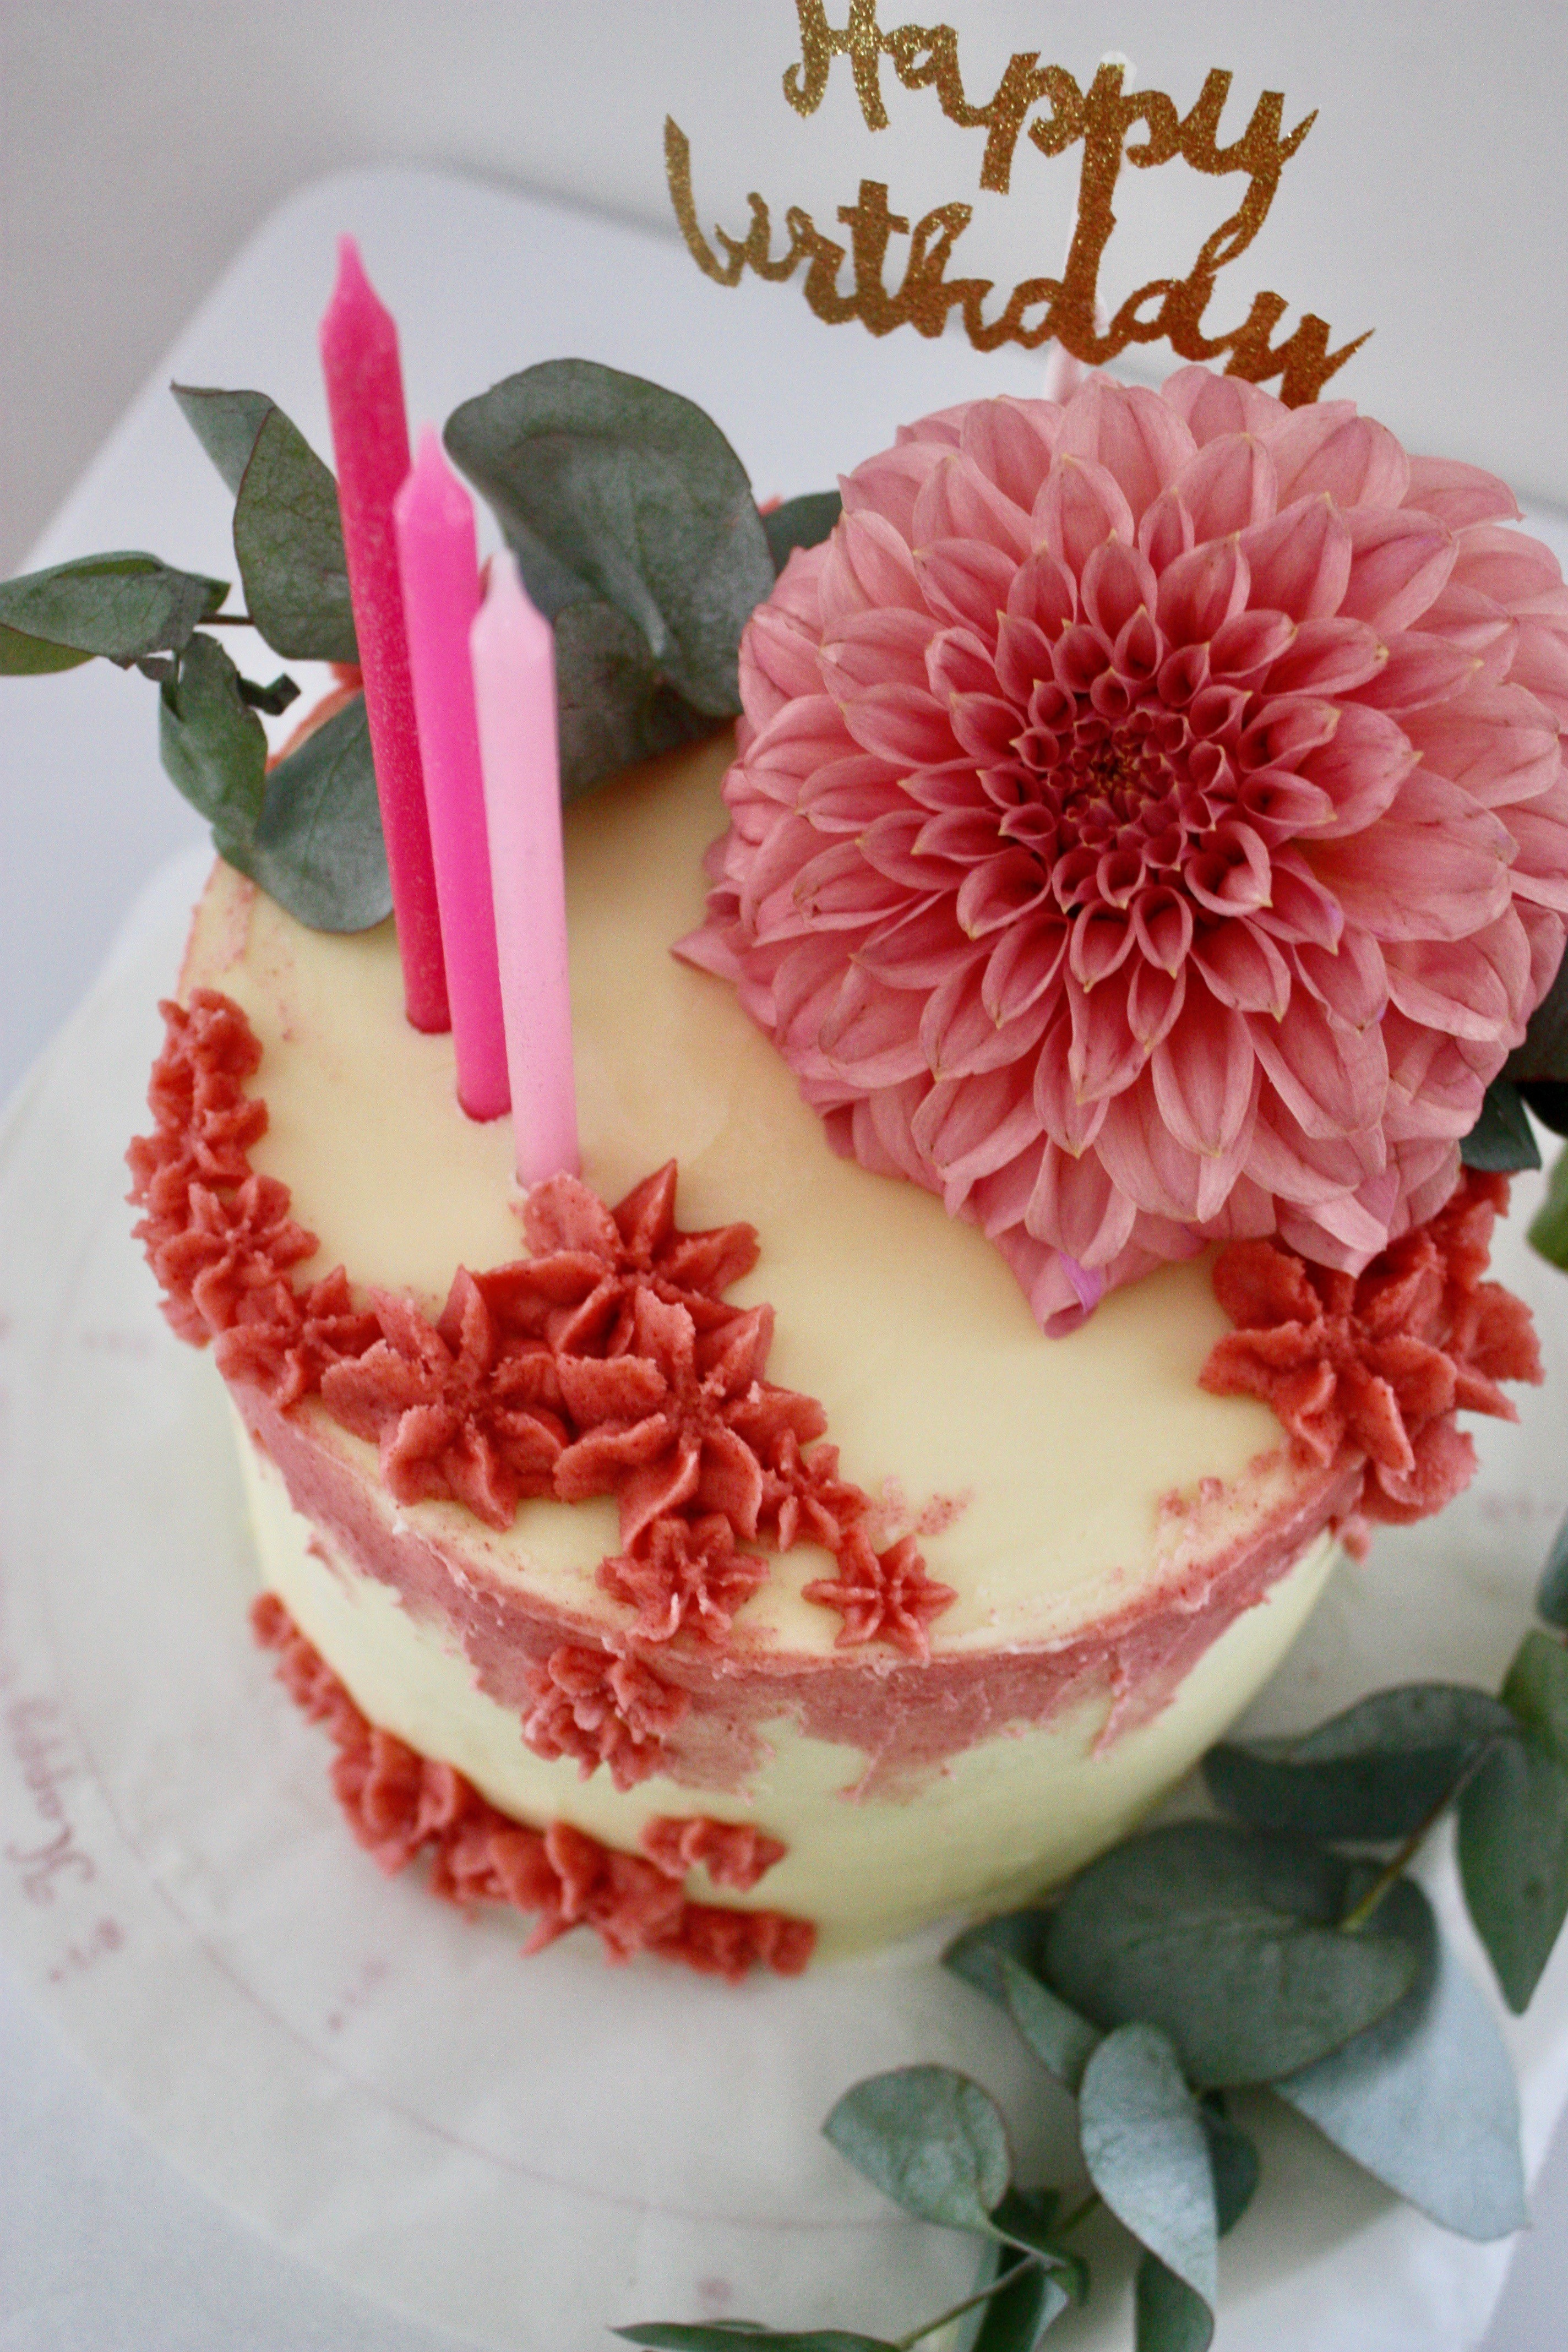 ボタニカル感のあるピンク色のケーキ パリ風 ママスタイル Blog Madame Figaro Jp フィガロジャポン